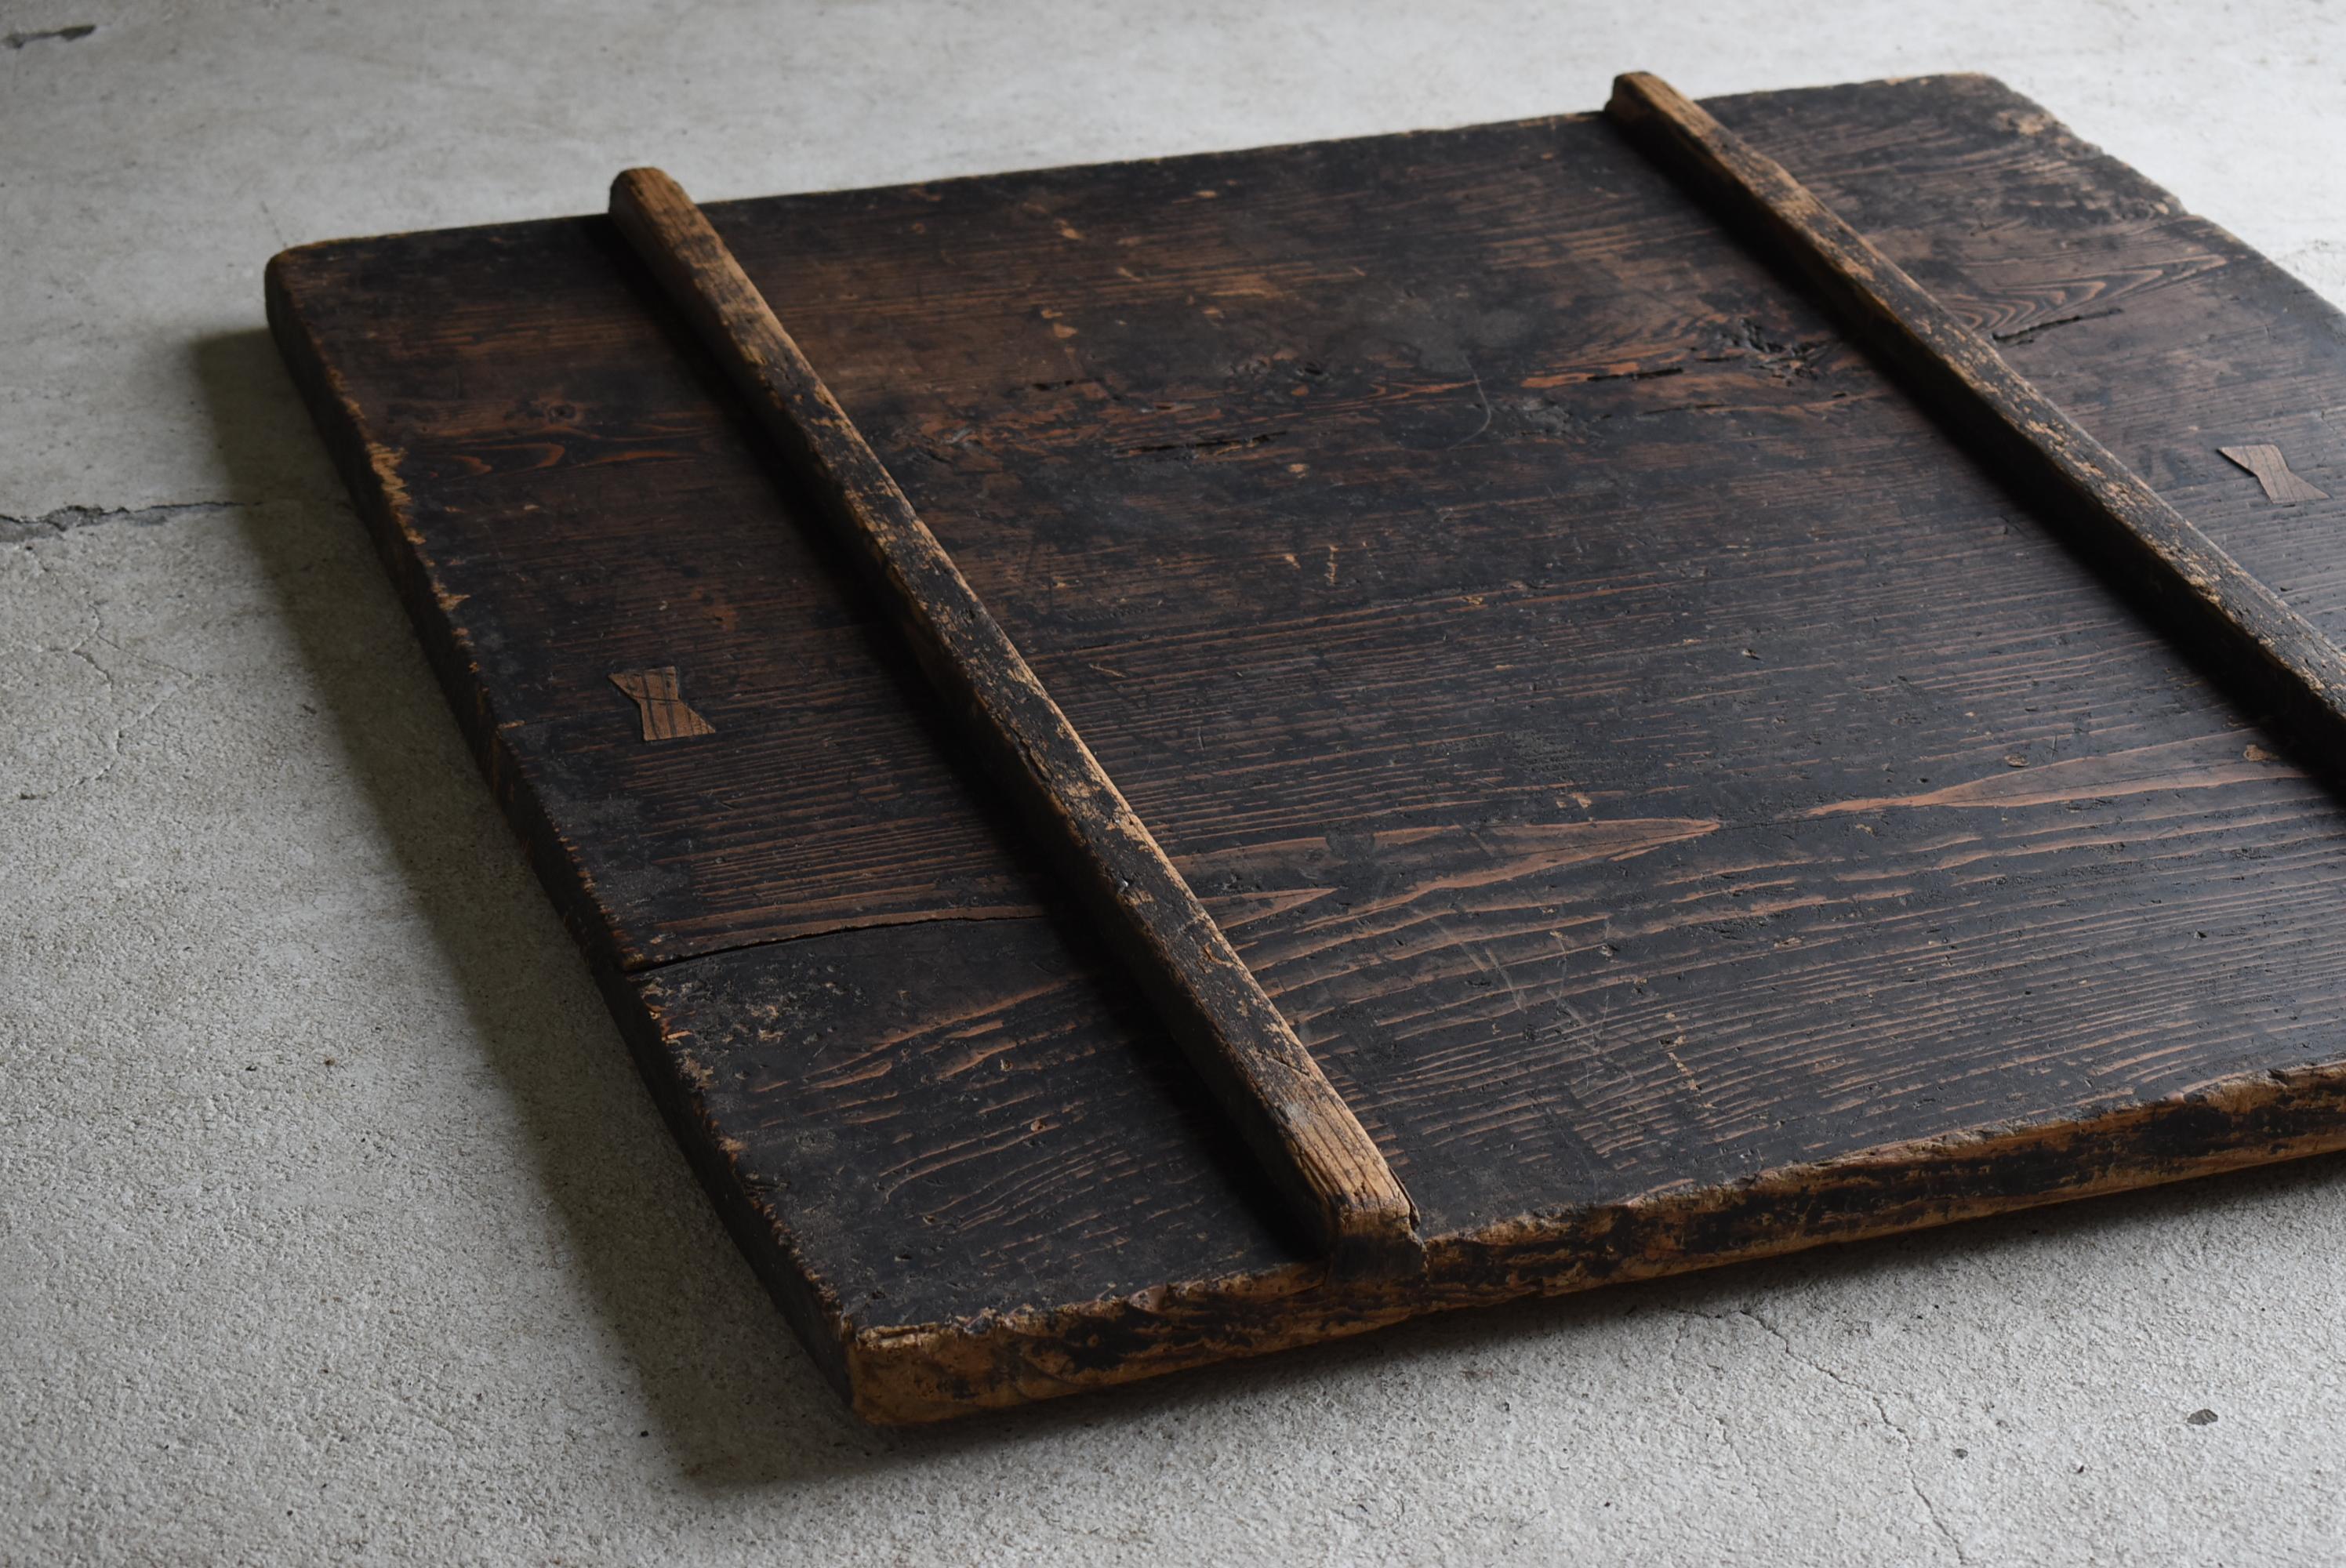 Japanese Antique Wabi Sabi Wooden Board 1860s-1900s / Exhibition Stand Mingei 1